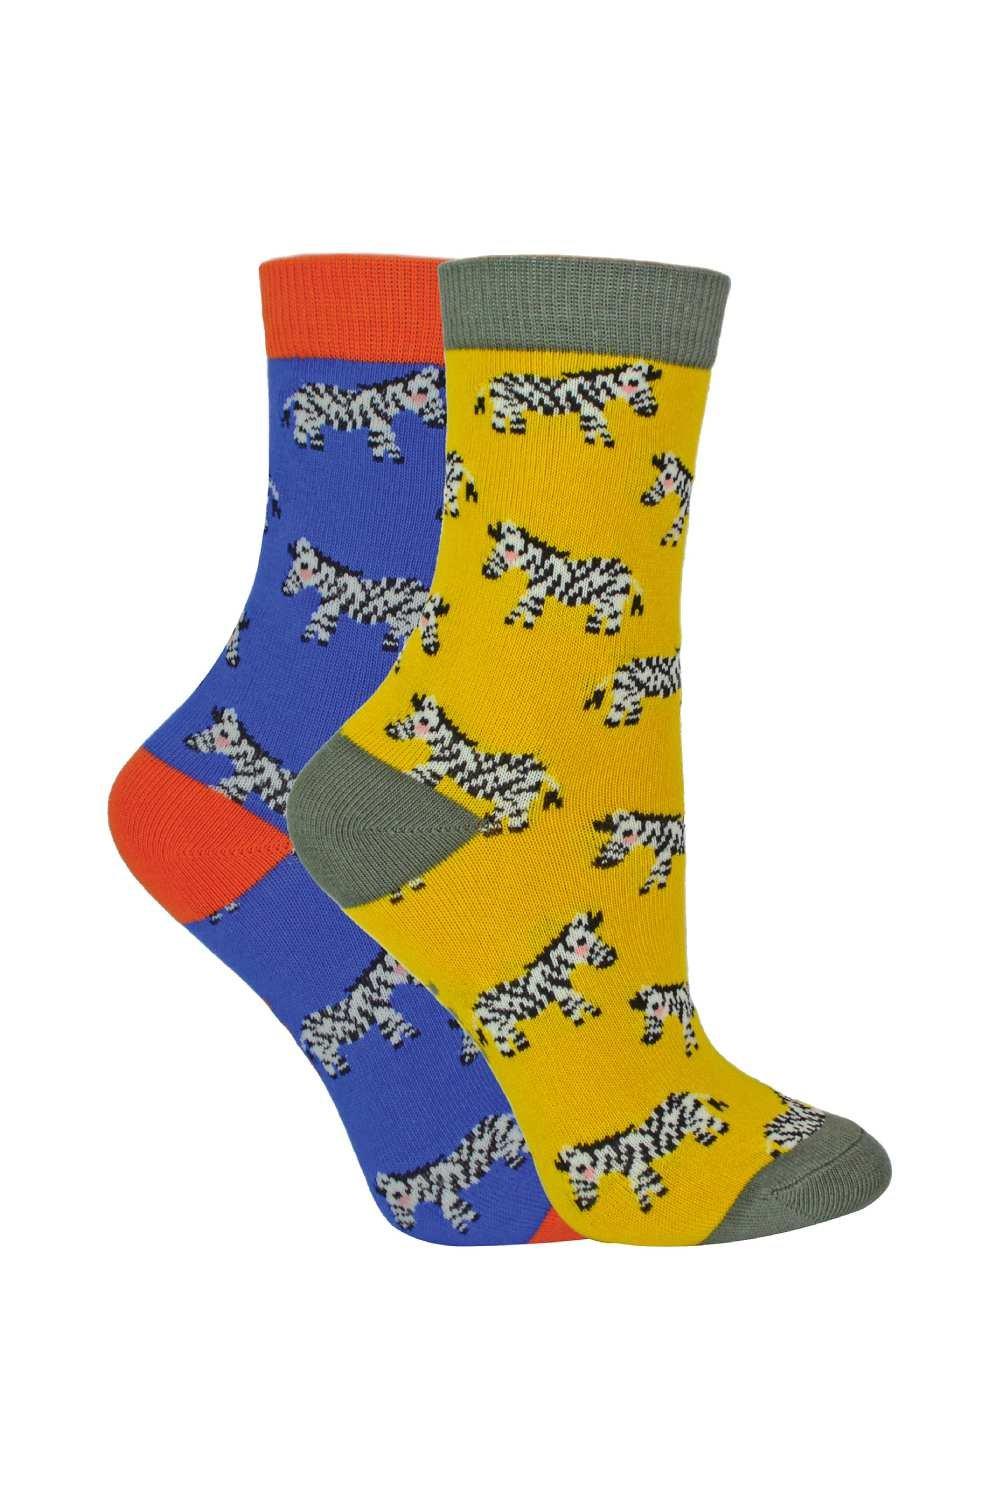 2 пары бамбуковых носков | Носки с рисунком, новинка, дизайн Miss Sparrow, желтый